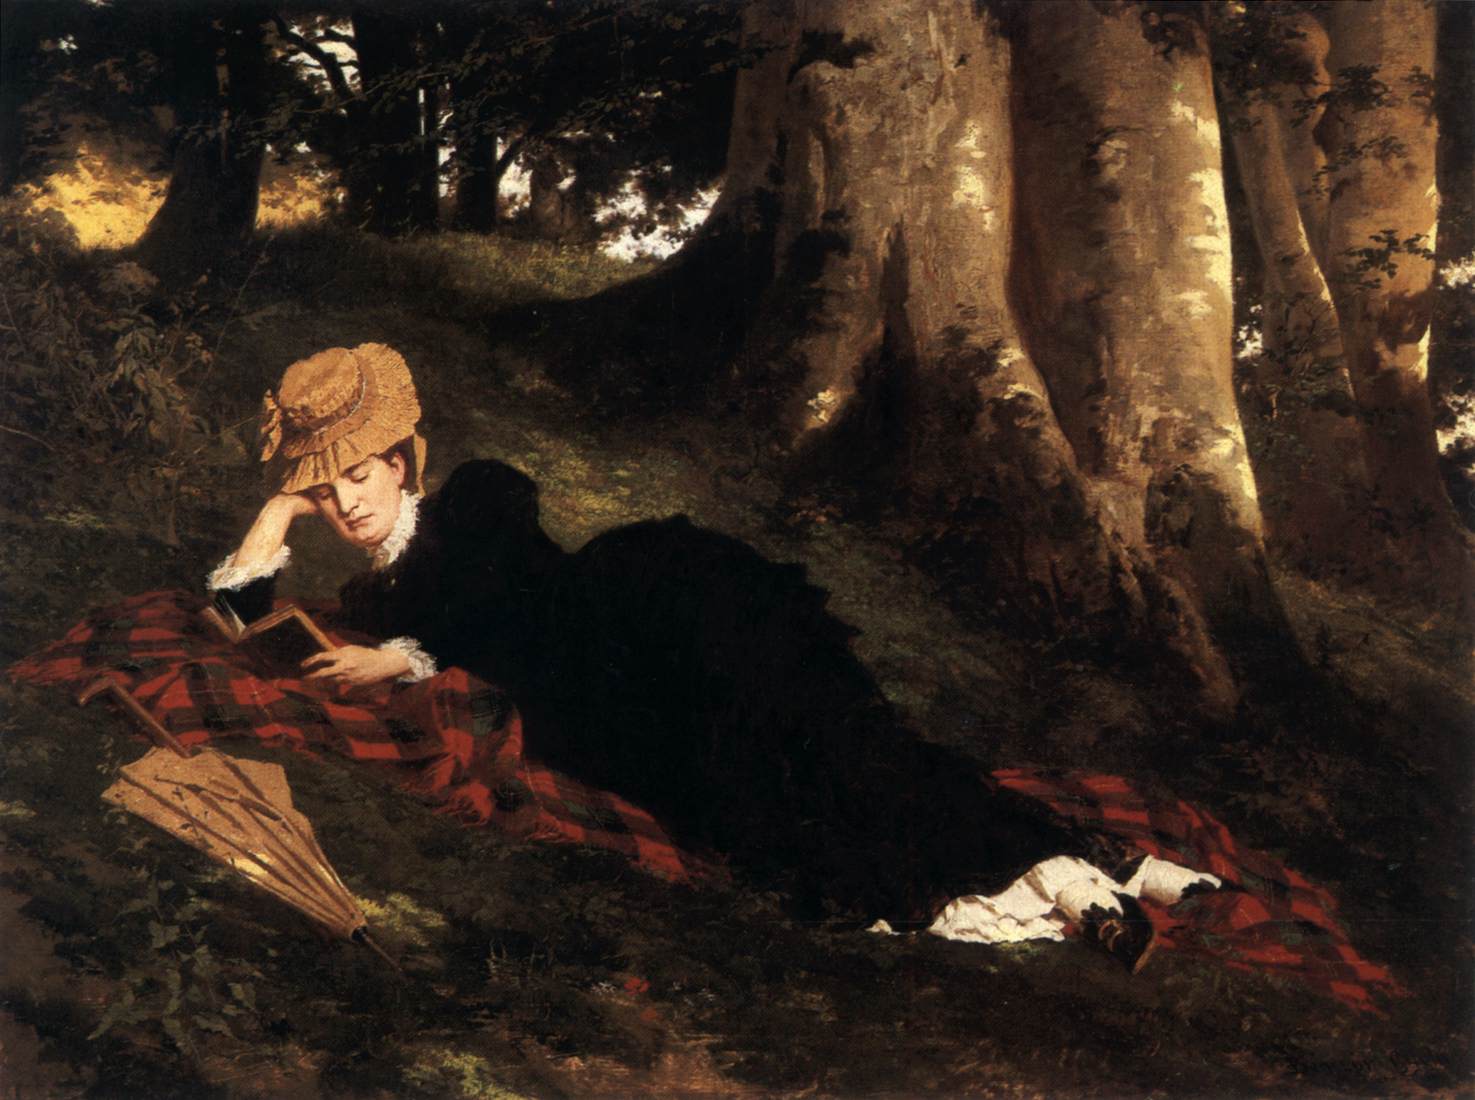 Lire la femme dans la forêt